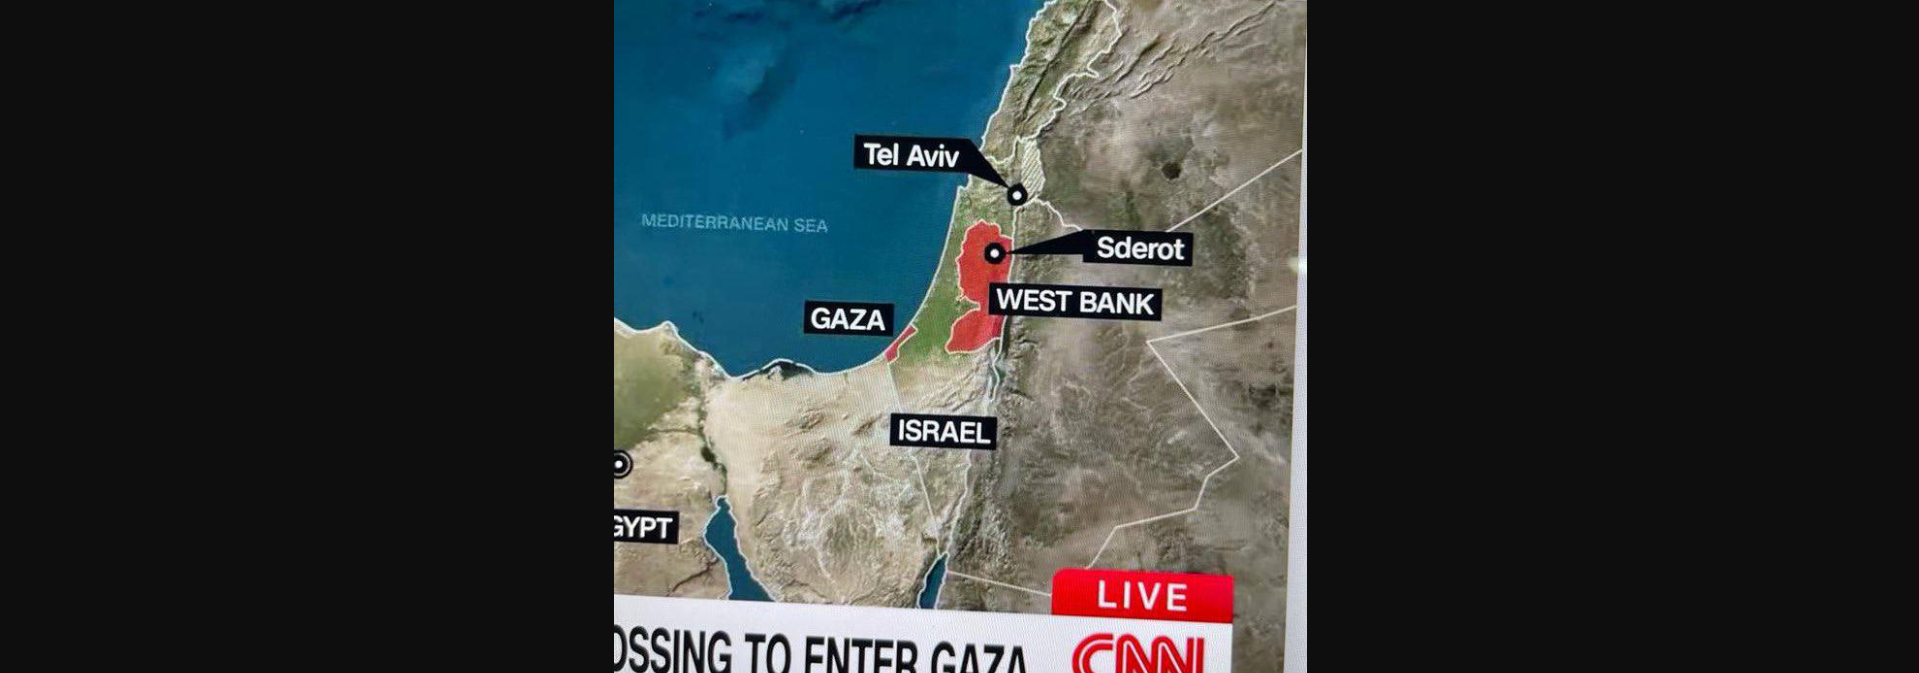 Λάθος από το CNN – Χάρτης δείχνει το Τελ Αβίβ κοντά στη Συρία